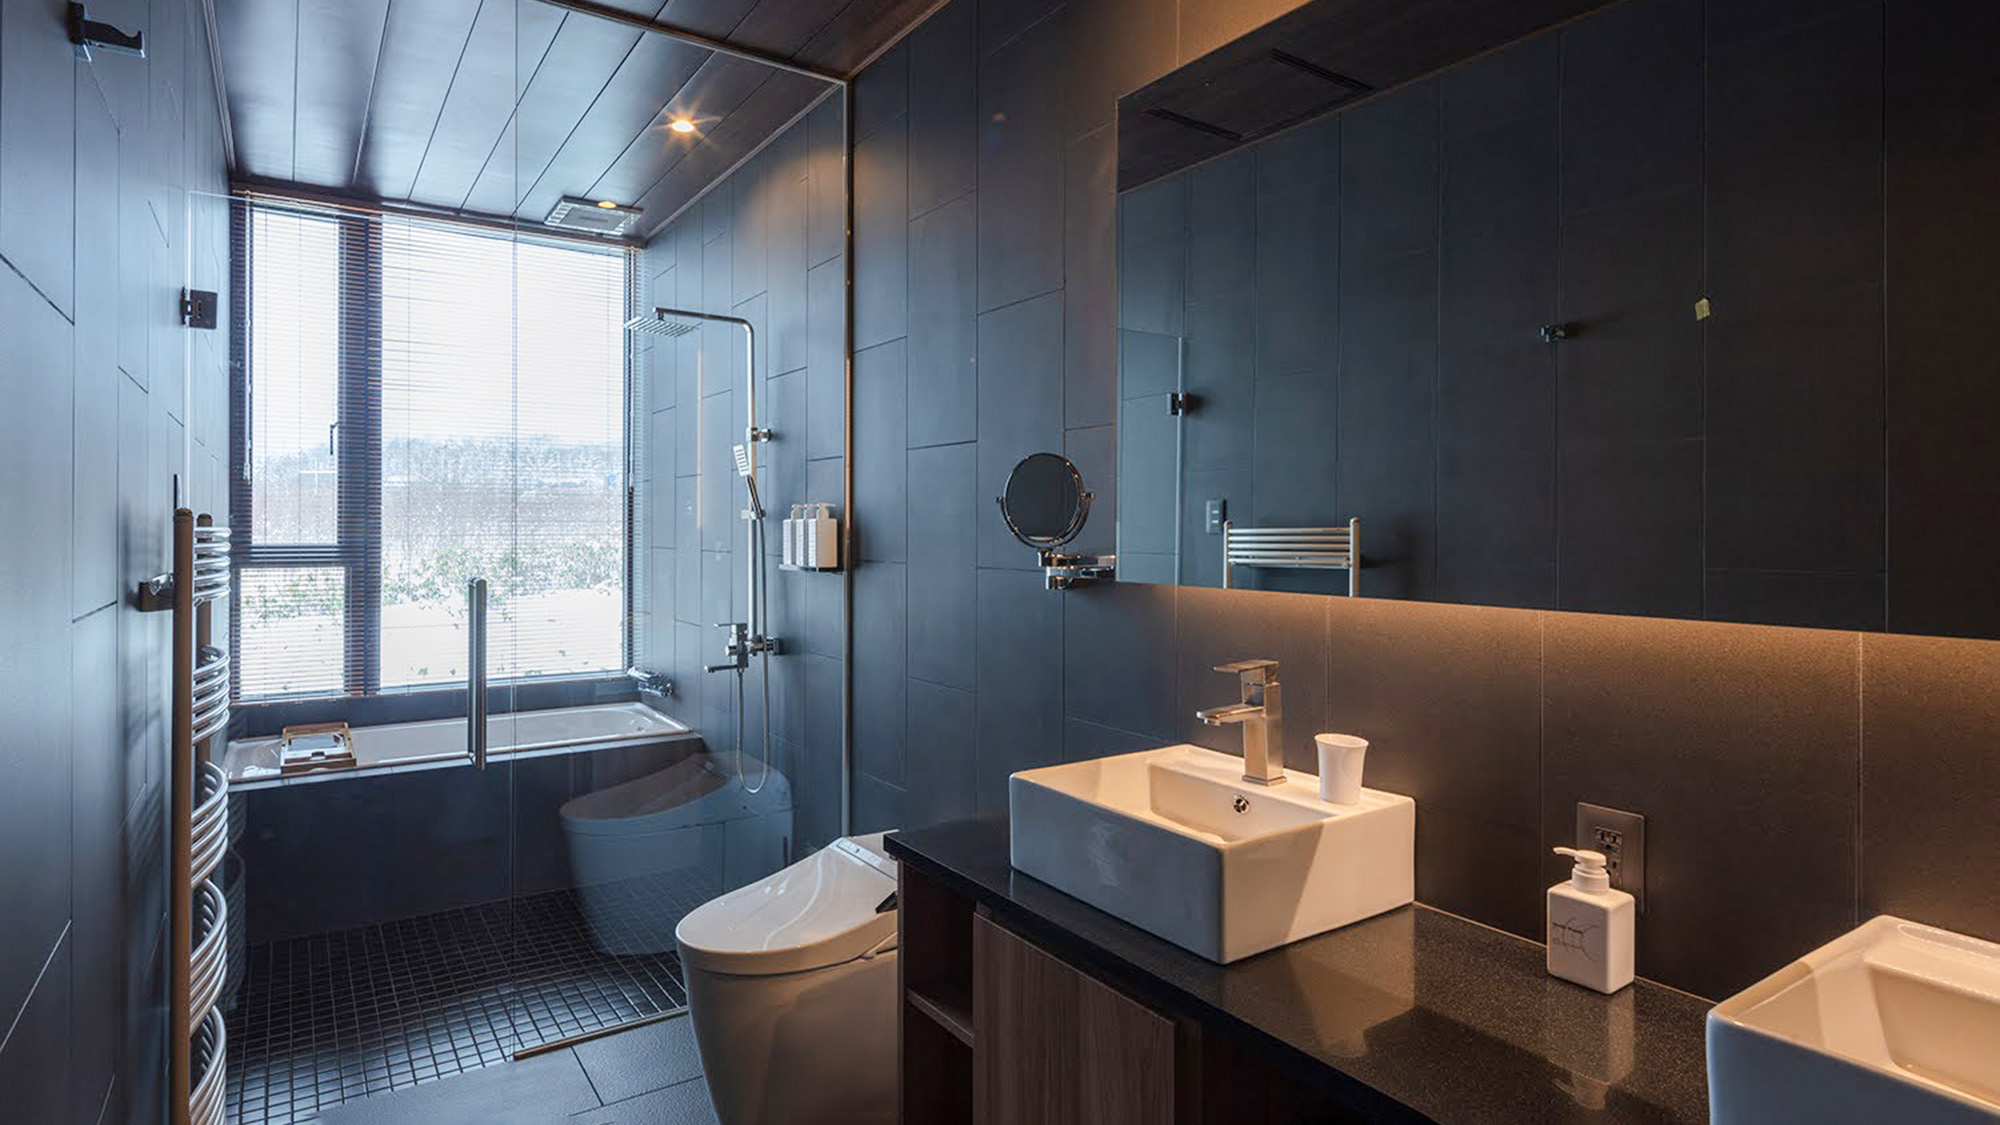 ・【タウンハウス：バスルーム】トイレ、洗面台と大きな窓のあるとてもきれいなバスルームです